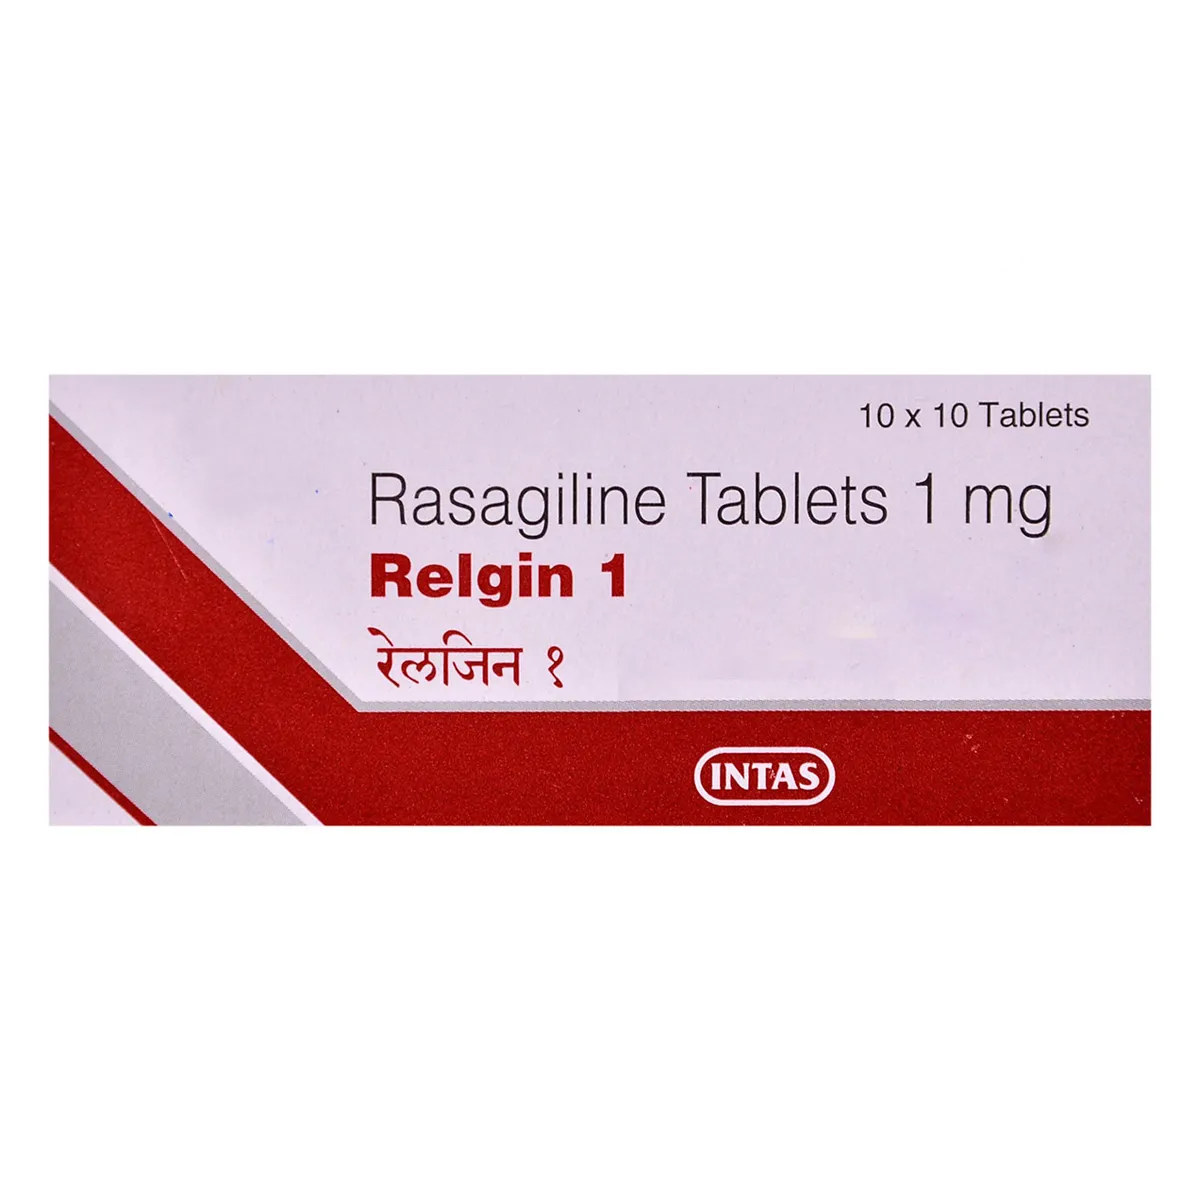 Relgin1 mg